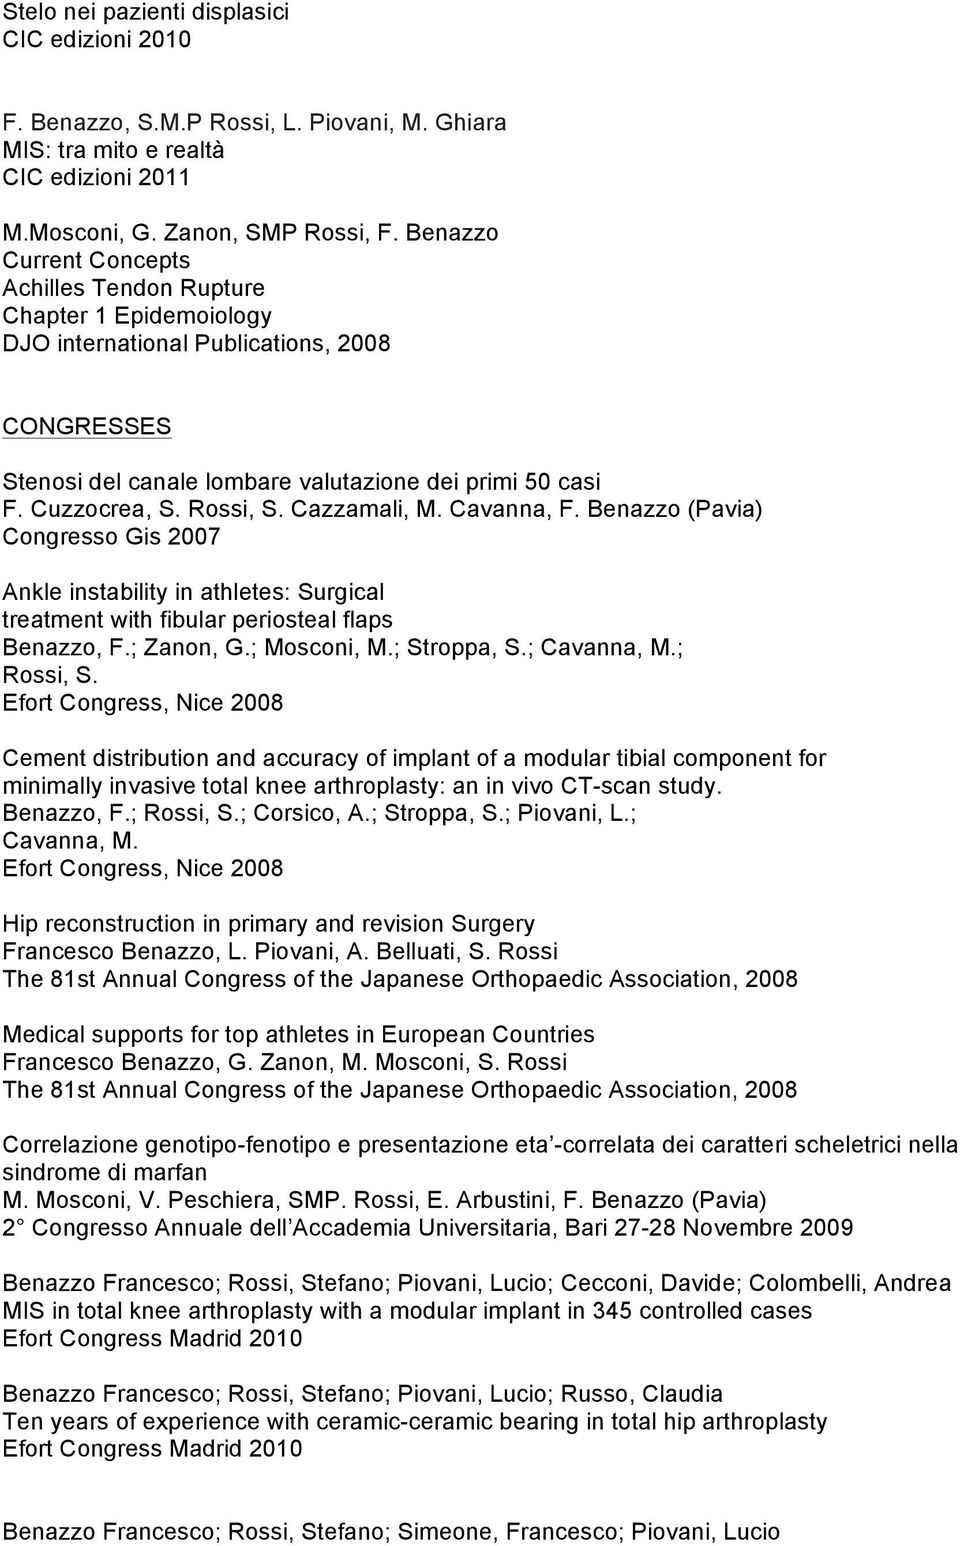 Rossi, S. Cazzamali, M. Cavanna, F. Benazzo (Pavia) Congresso Gis 2007 Ankle instability in athletes: Surgical treatment with fibular periosteal flaps Benazzo, F.; Zanon, G.; Mosconi, M.; Stroppa, S.